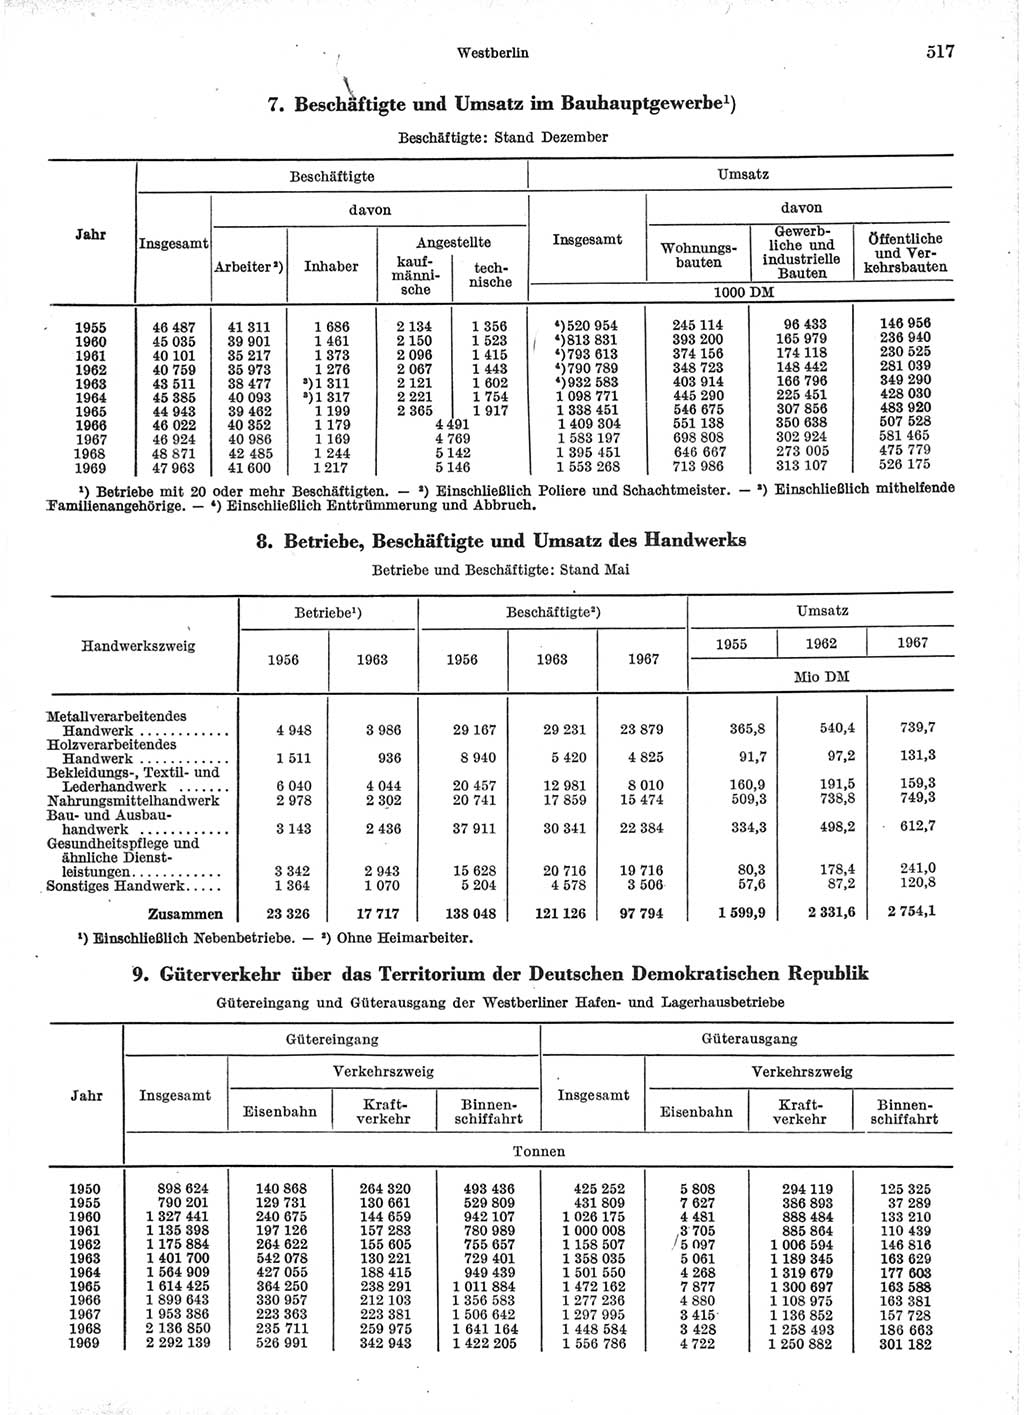 Statistisches Jahrbuch der Deutschen Demokratischen Republik (DDR) 1971, Seite 517 (Stat. Jb. DDR 1971, S. 517)